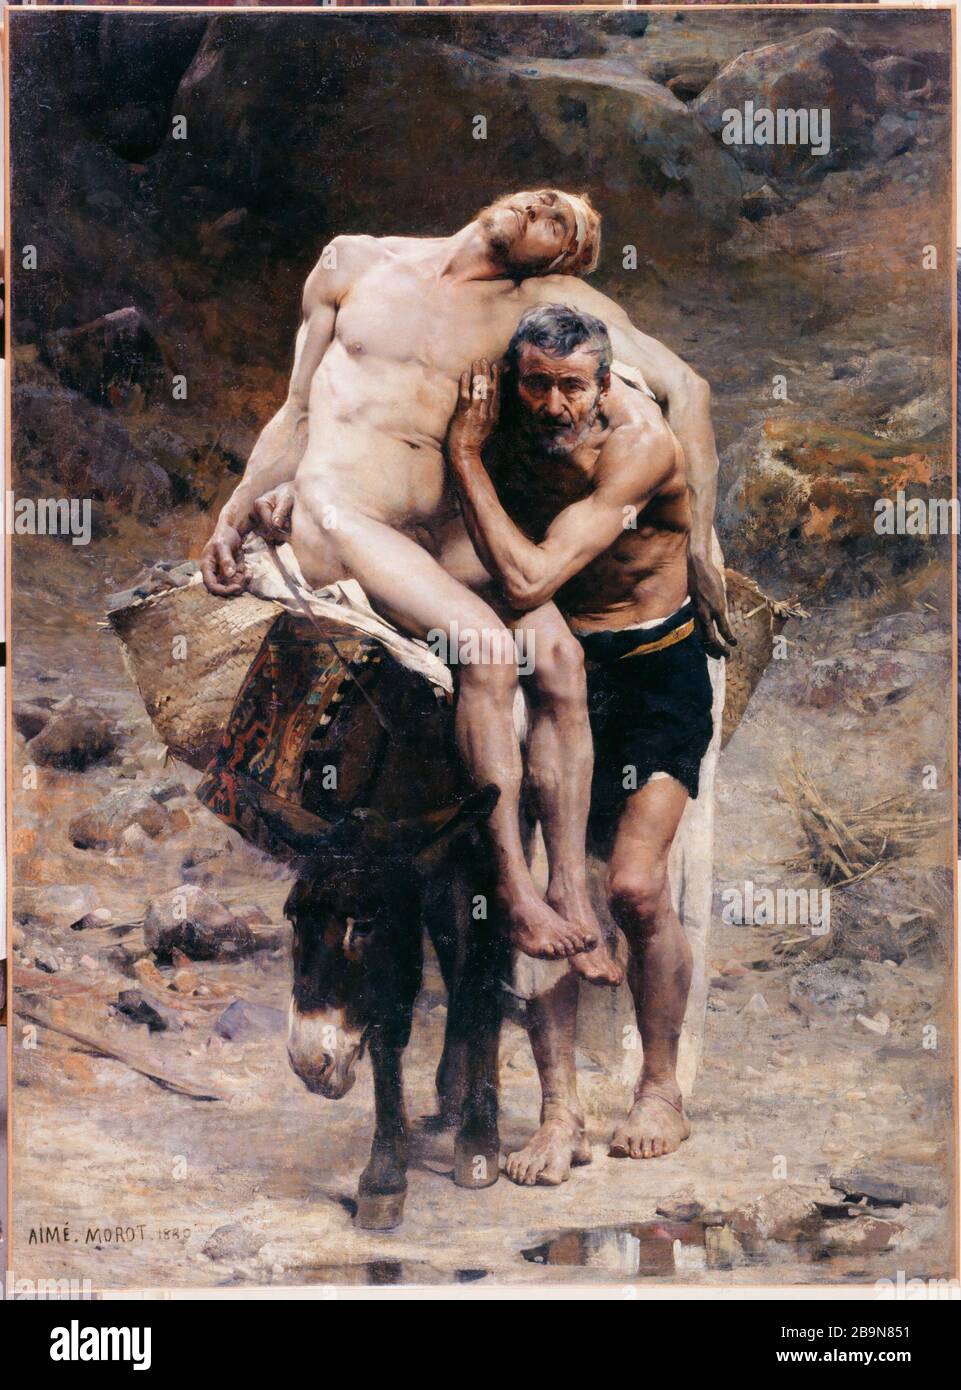 Der Barmherzige Samariter Aimé Morot (1850-1913). "Le bon Samaritain". Huile sur toile, 1880. Musée des Beaux-Arts de la Ville de Paris, Petit Palais. Stockfoto